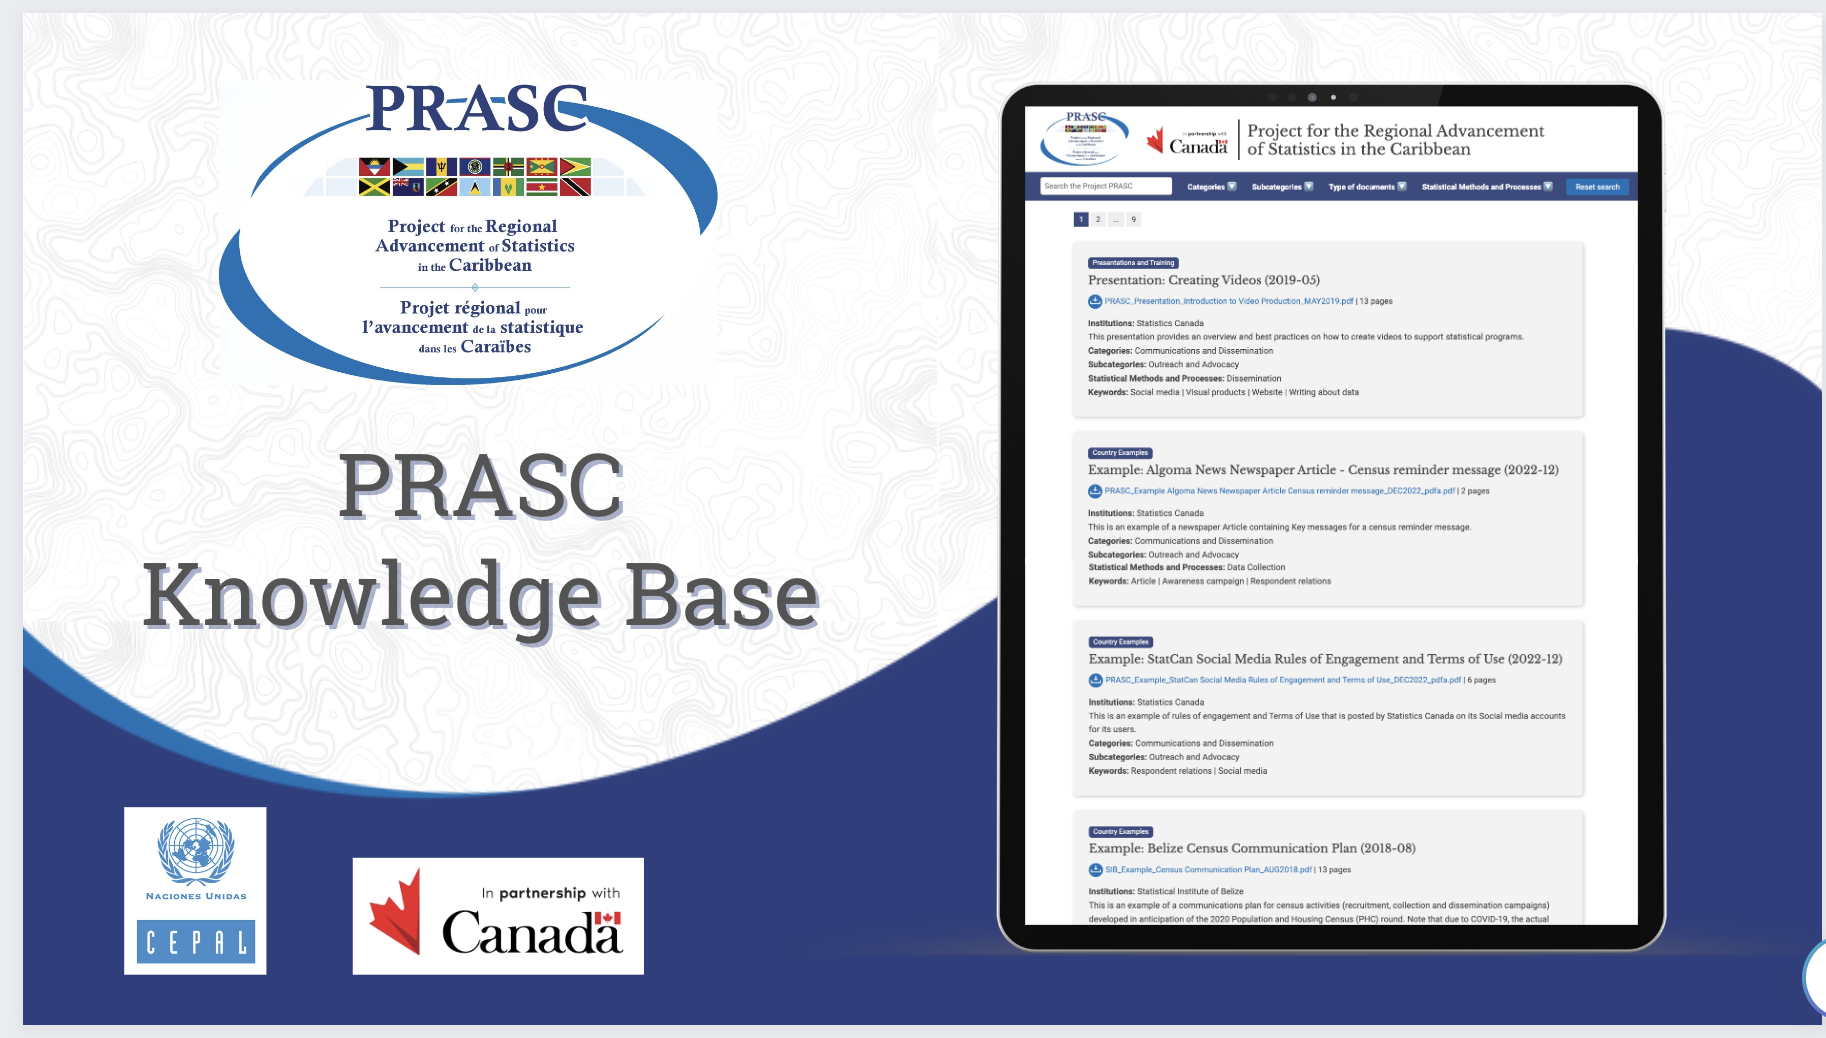 PRASC Knowledge Base